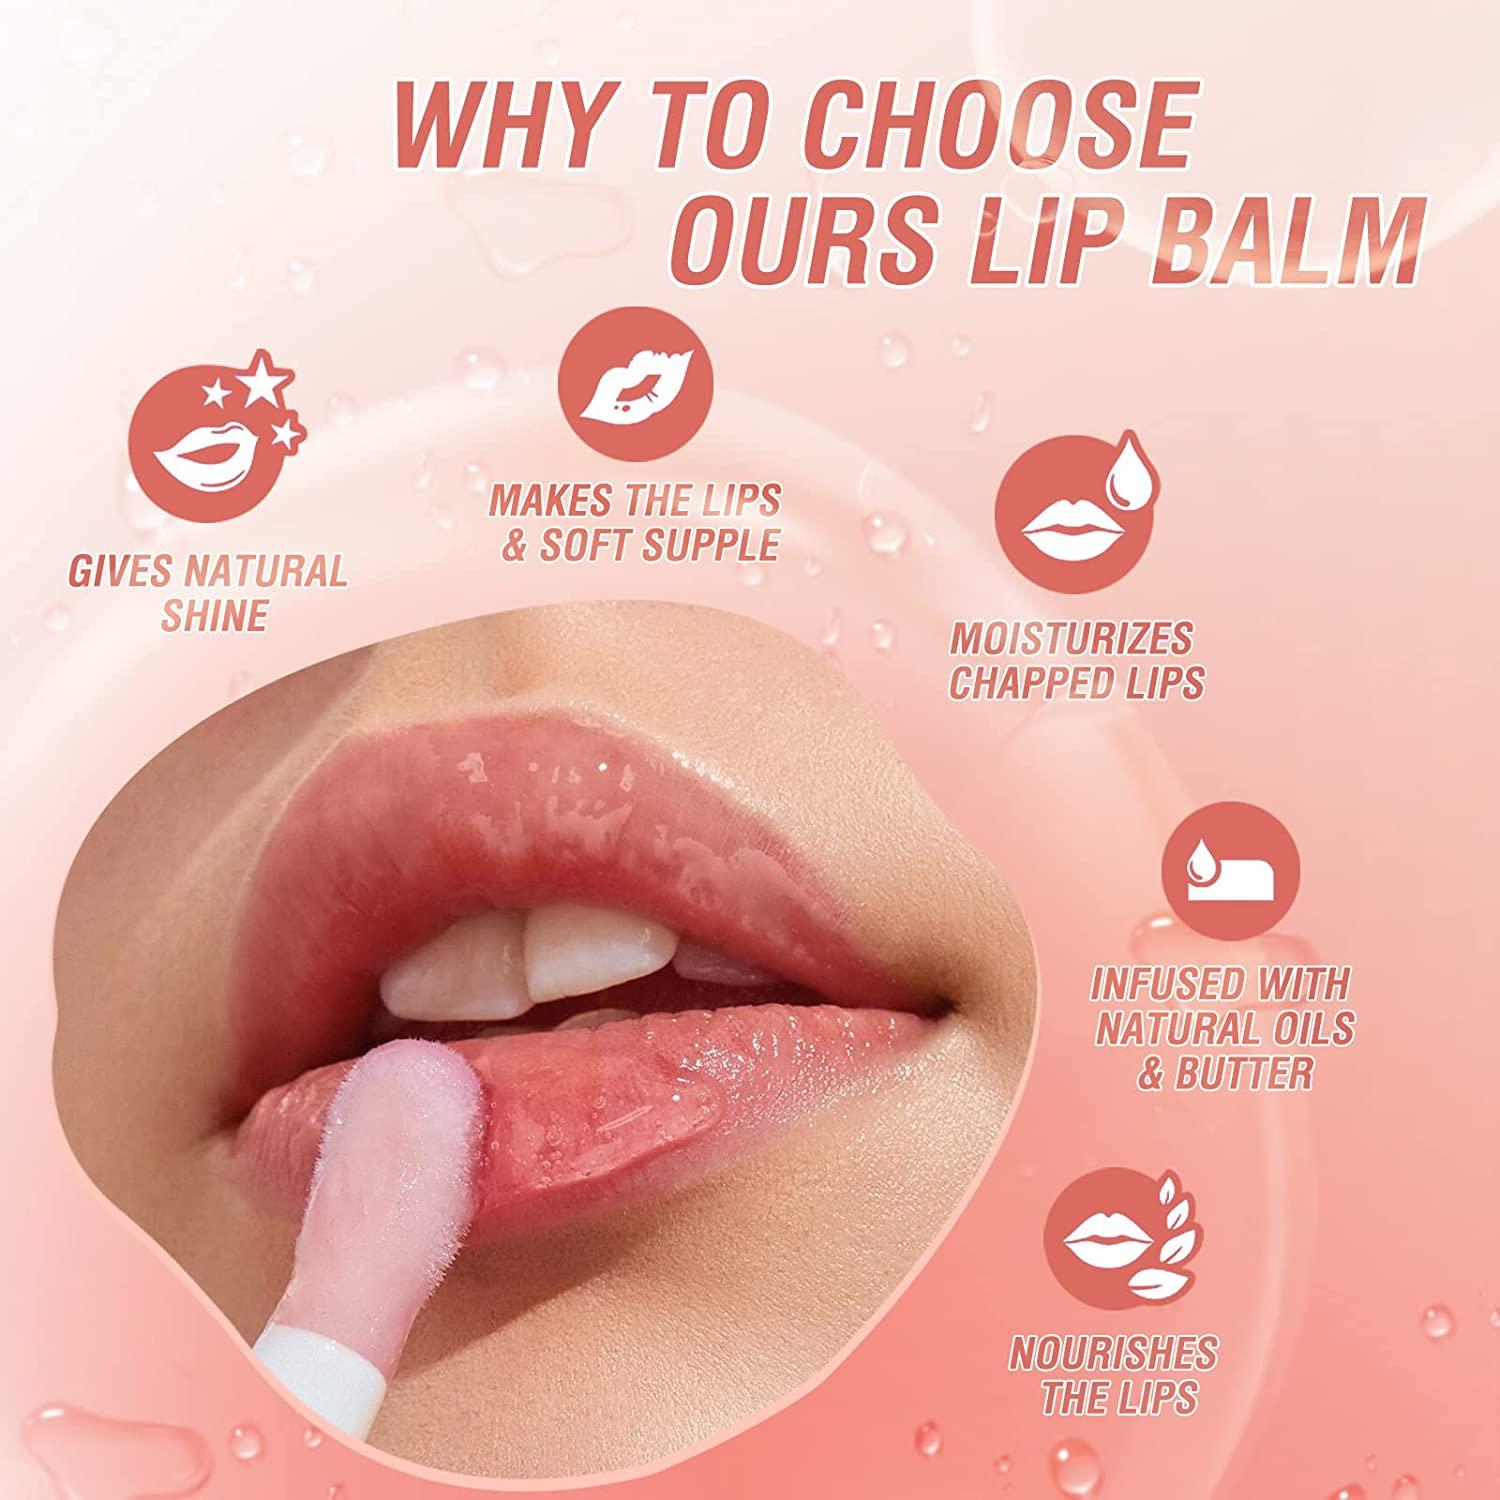 Lip Balm & Care